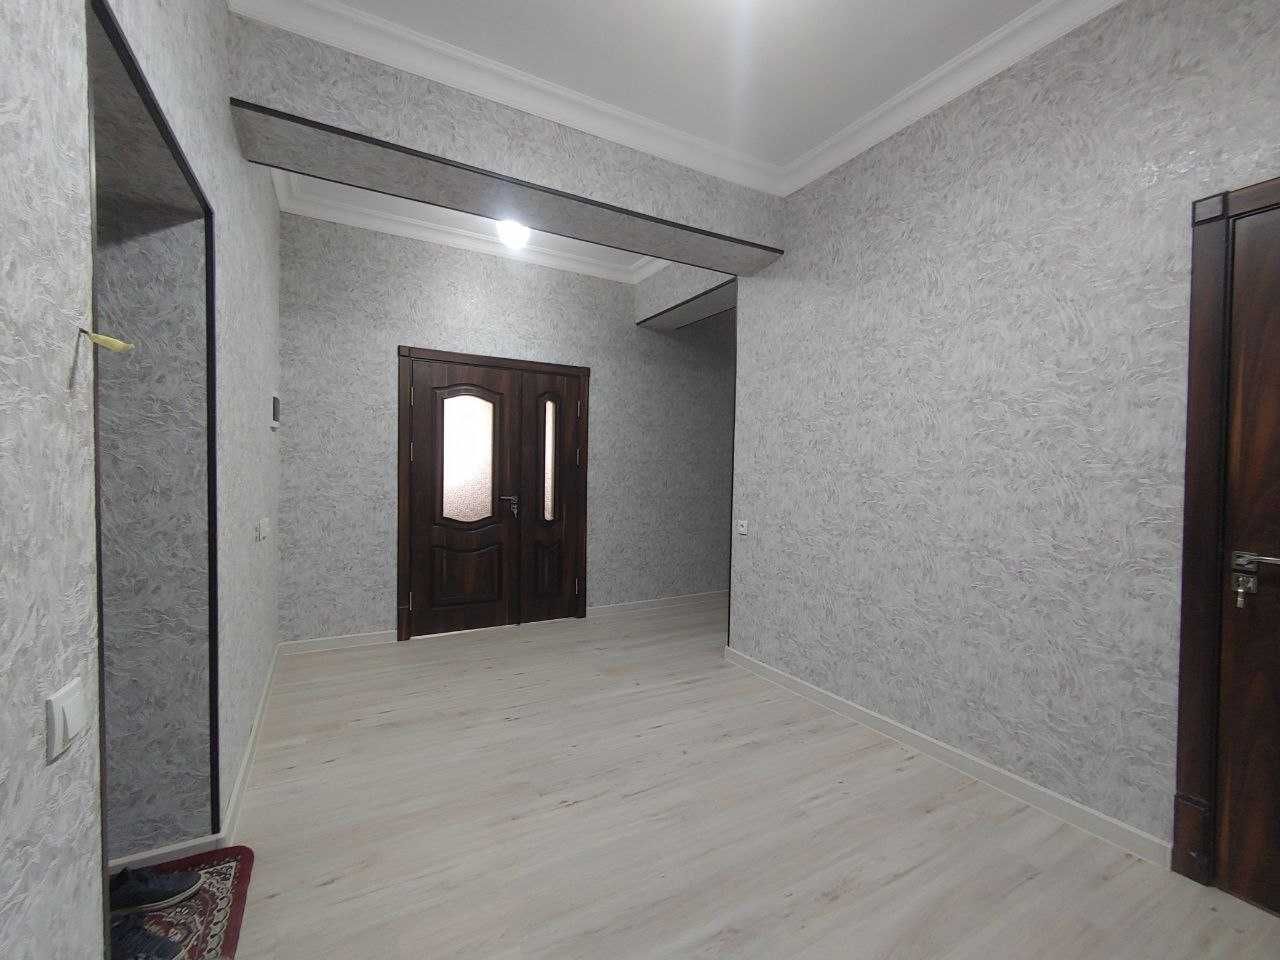 Янгихает, 3-х комнатная квартира в новостройке с ремонтом, 89 м2, 2 эт